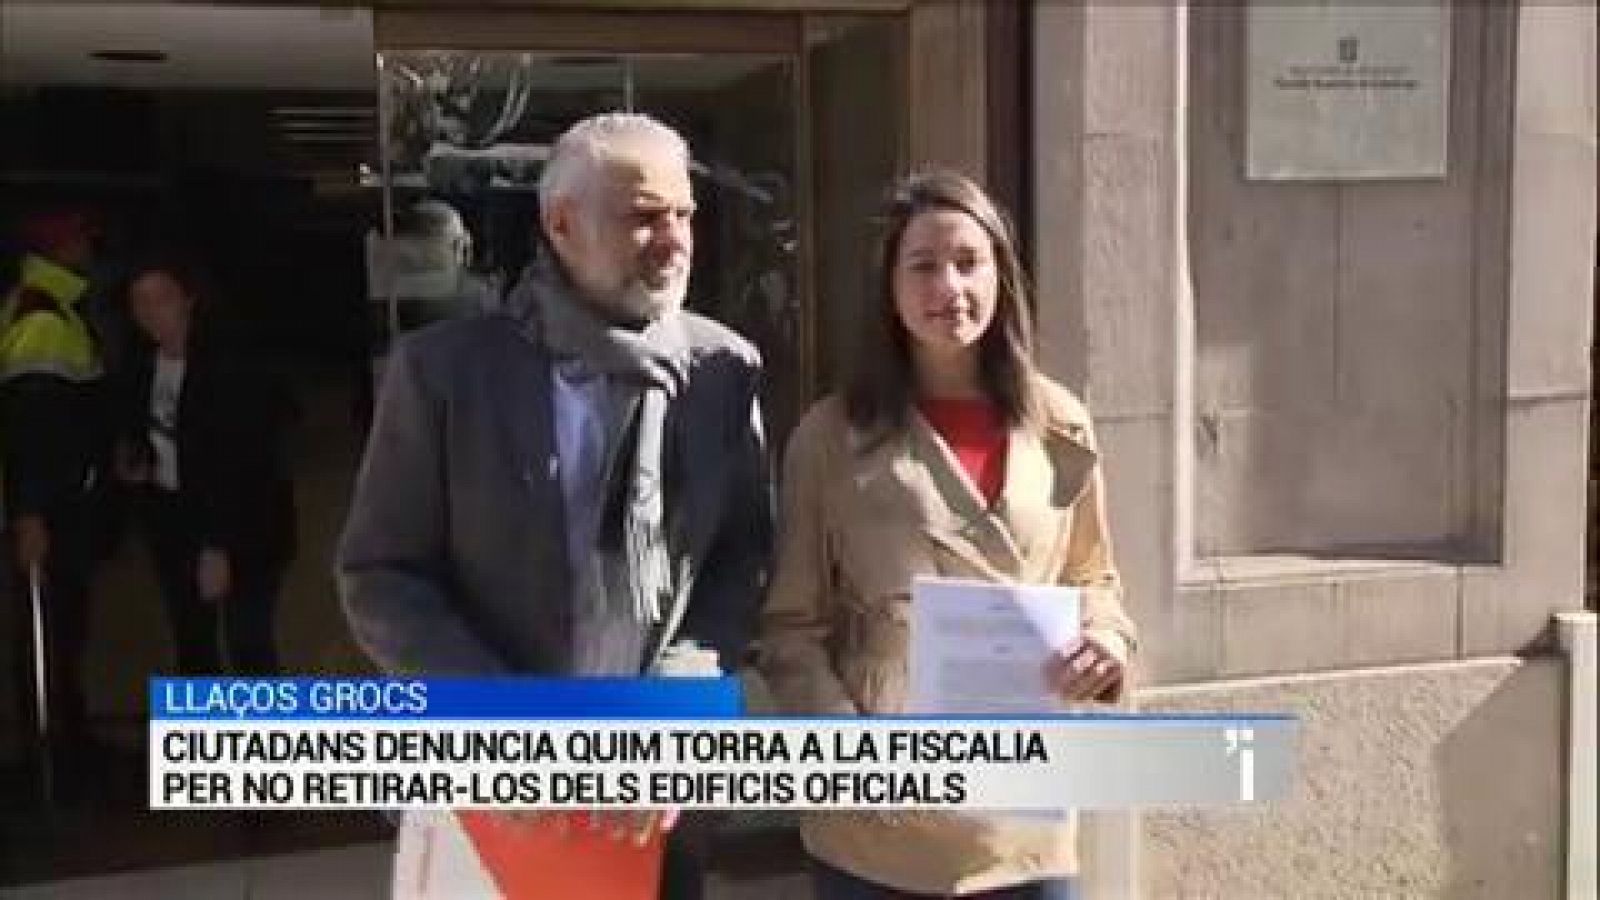 L'Informatiu | Sumari de les notícies del 15/03/2019 - RTVE.es